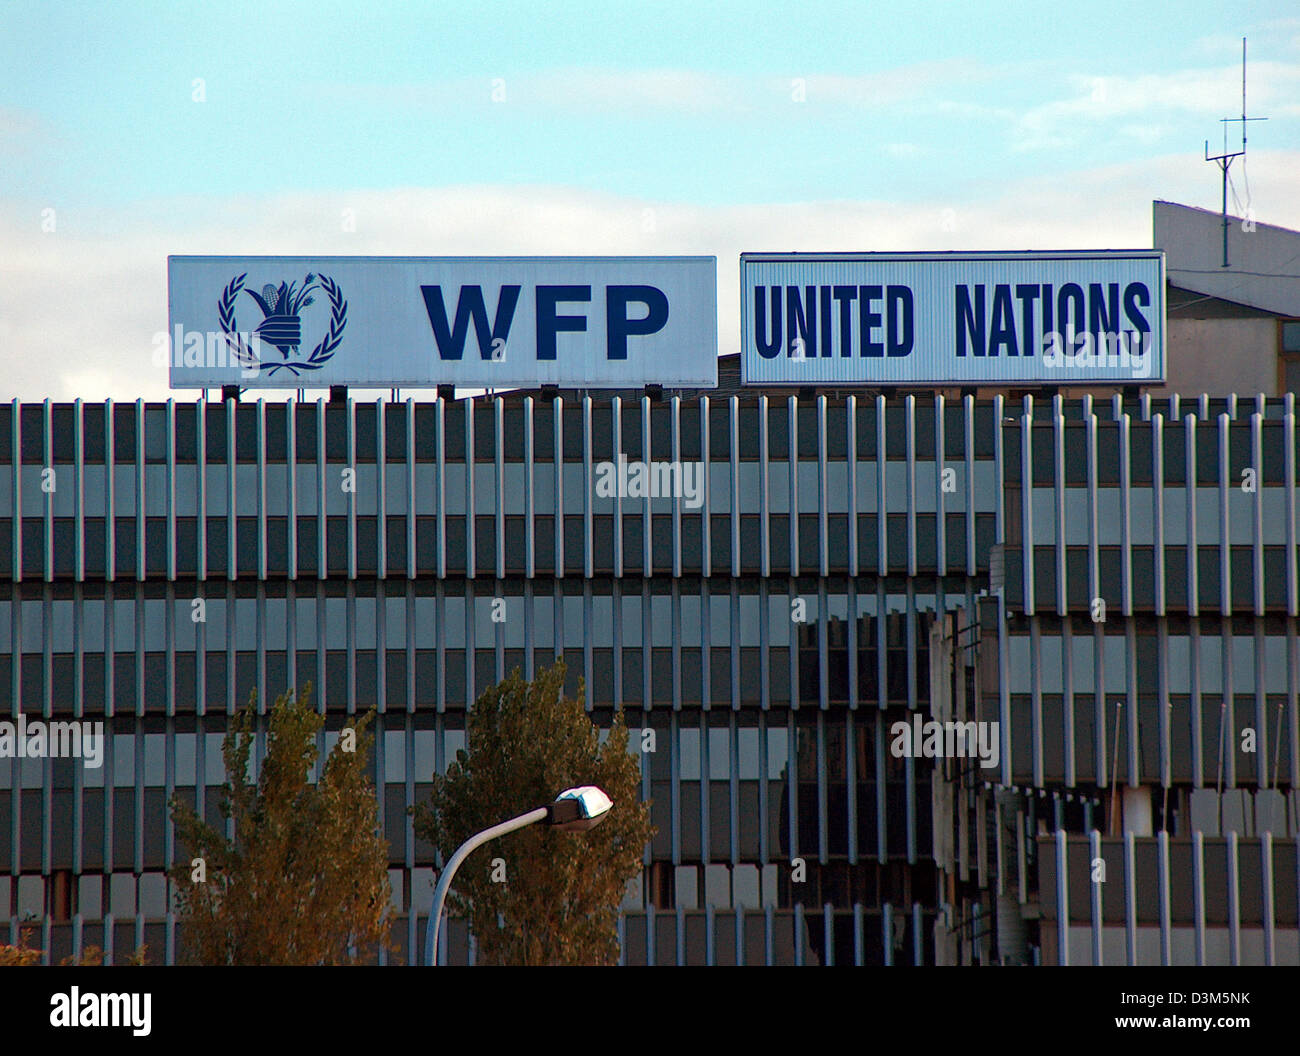 Dpa) - l'immagine mostra la sede centrale delle Nazioni Unite (ONU)  Programma Alimentare Mondiale (PAM) a Roma, Italia, 23 novembre 2005. Il  comune di programmi di aiuti alimentari delle Nazioni Unite e l